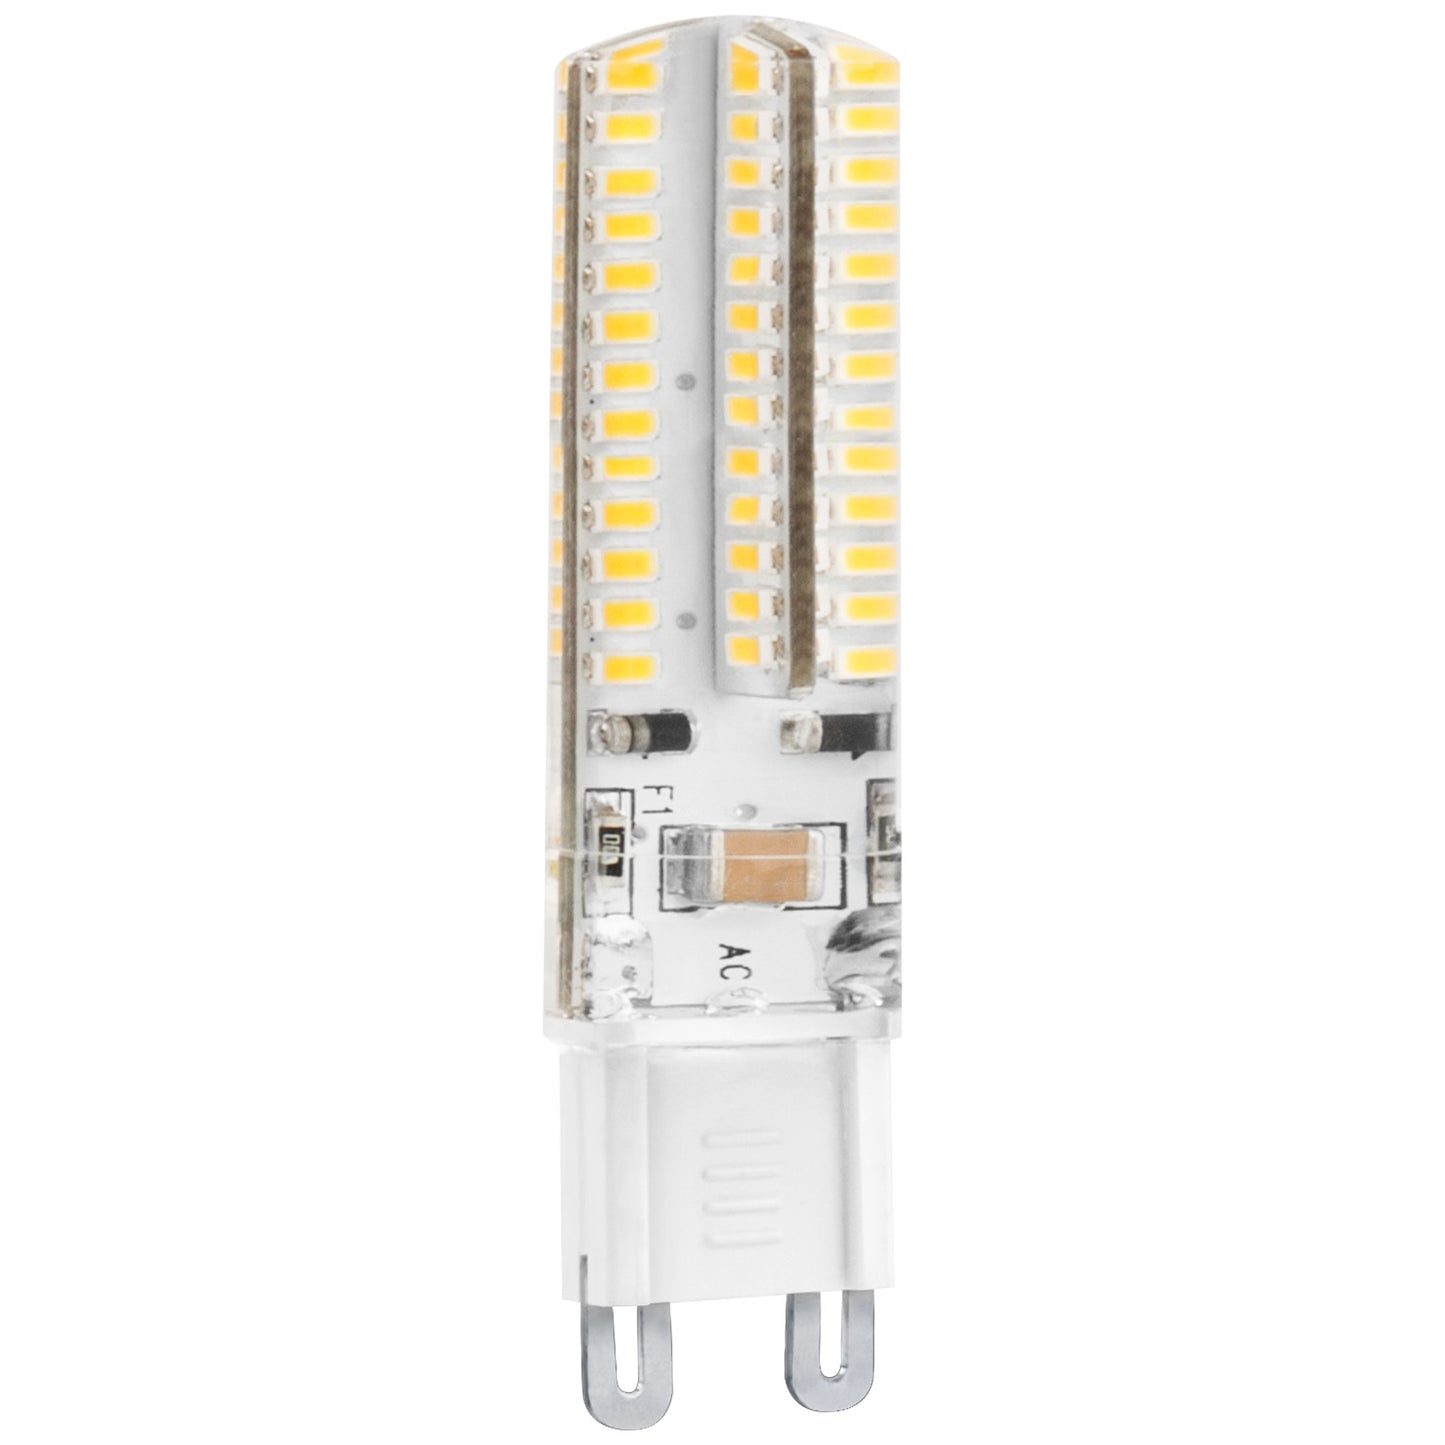 LAMPADA LED MATEL G9 SILICONA 5W